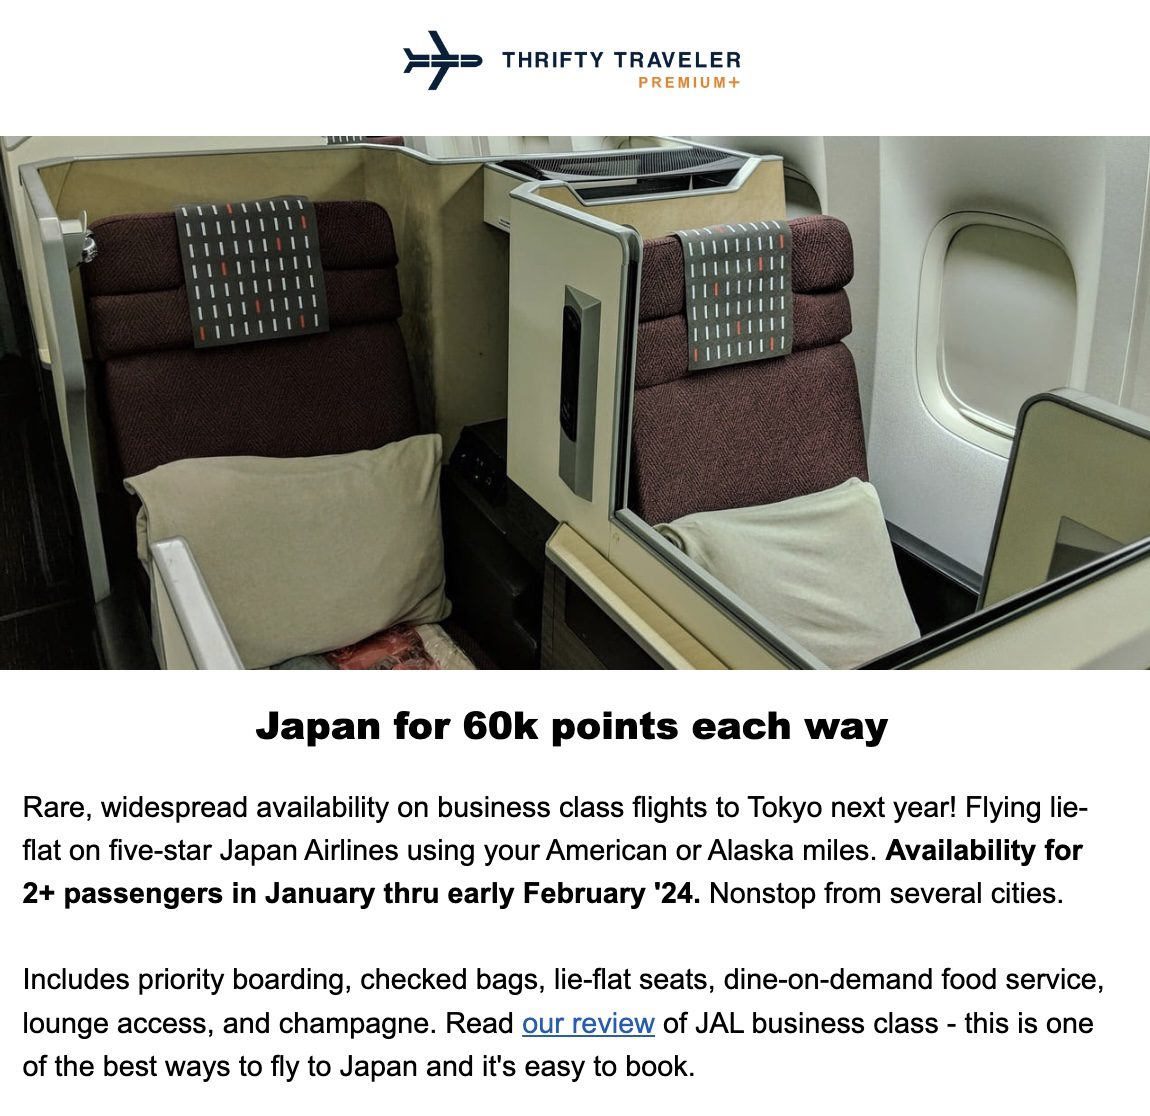 Japan Airlines business class flight deal